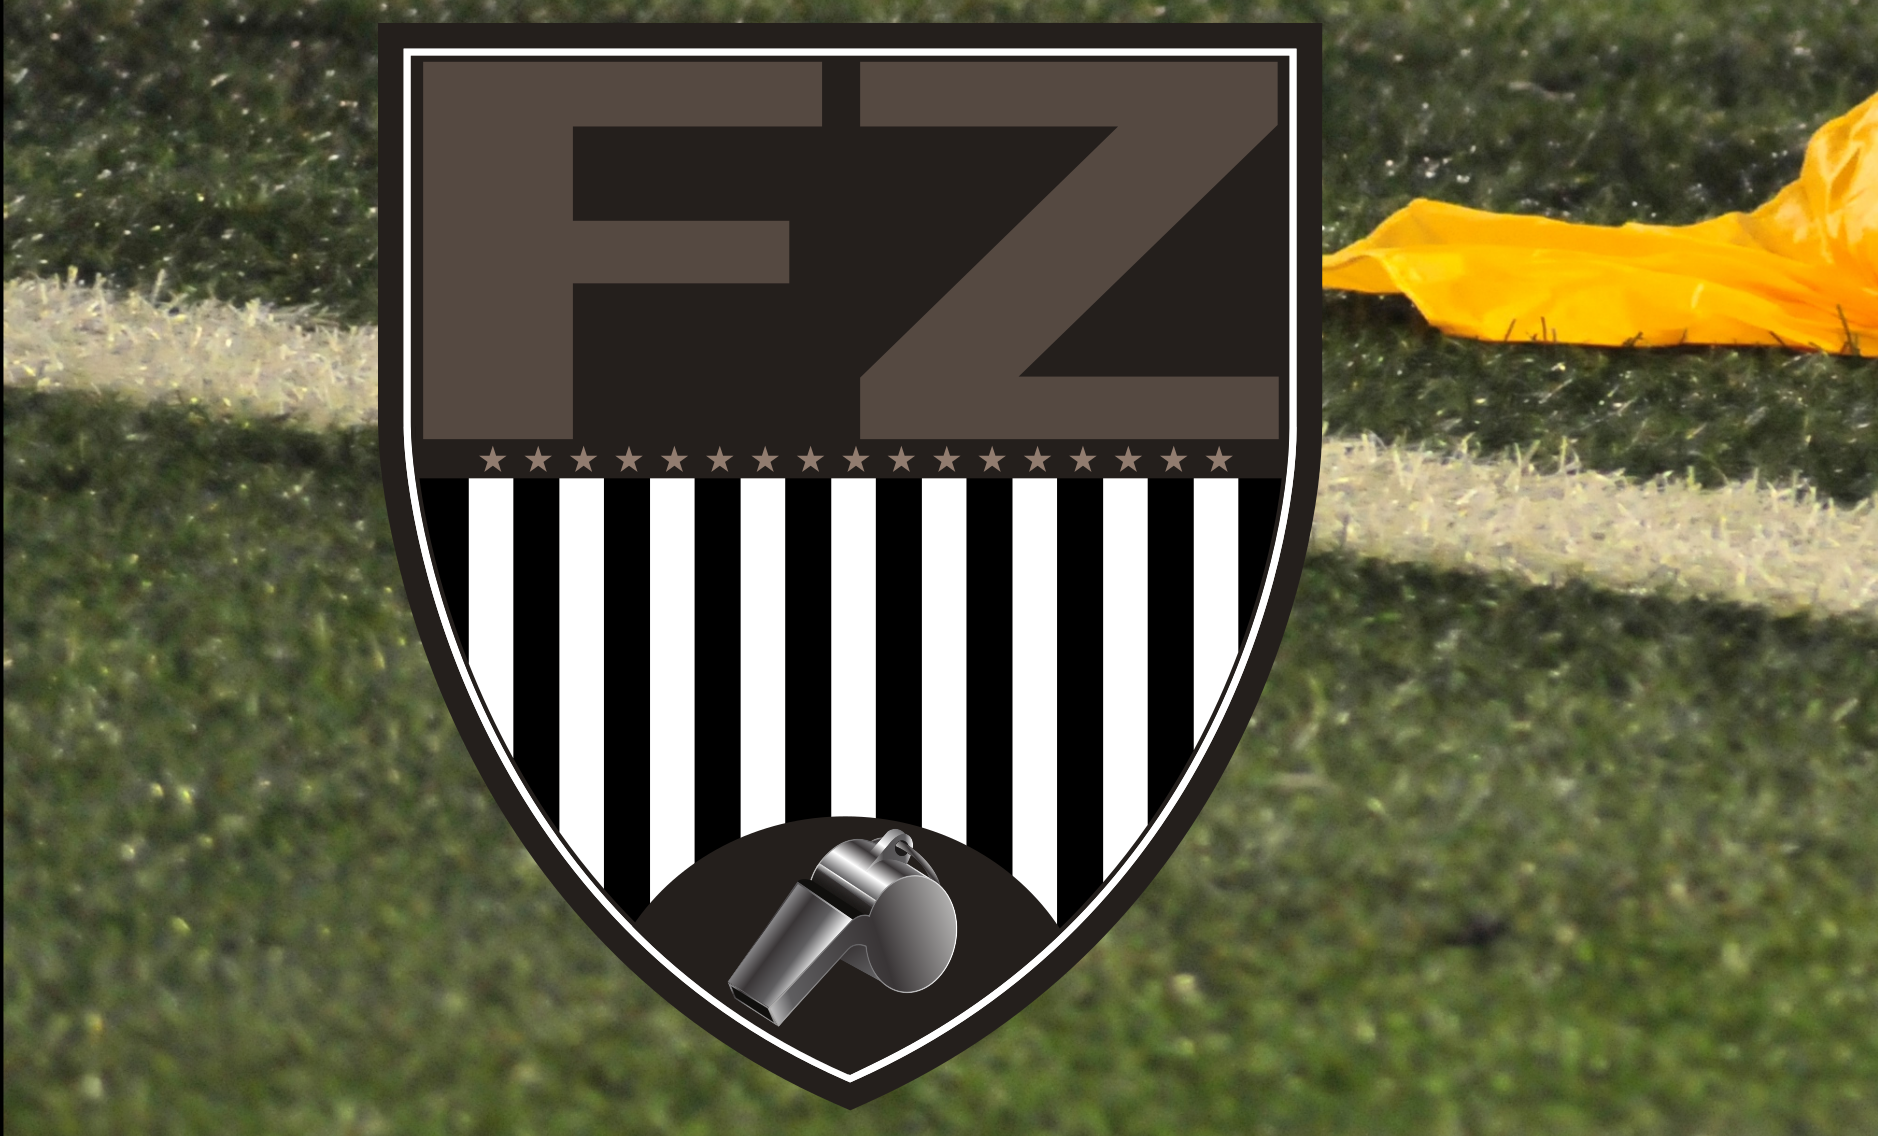 www.footballzebras.com